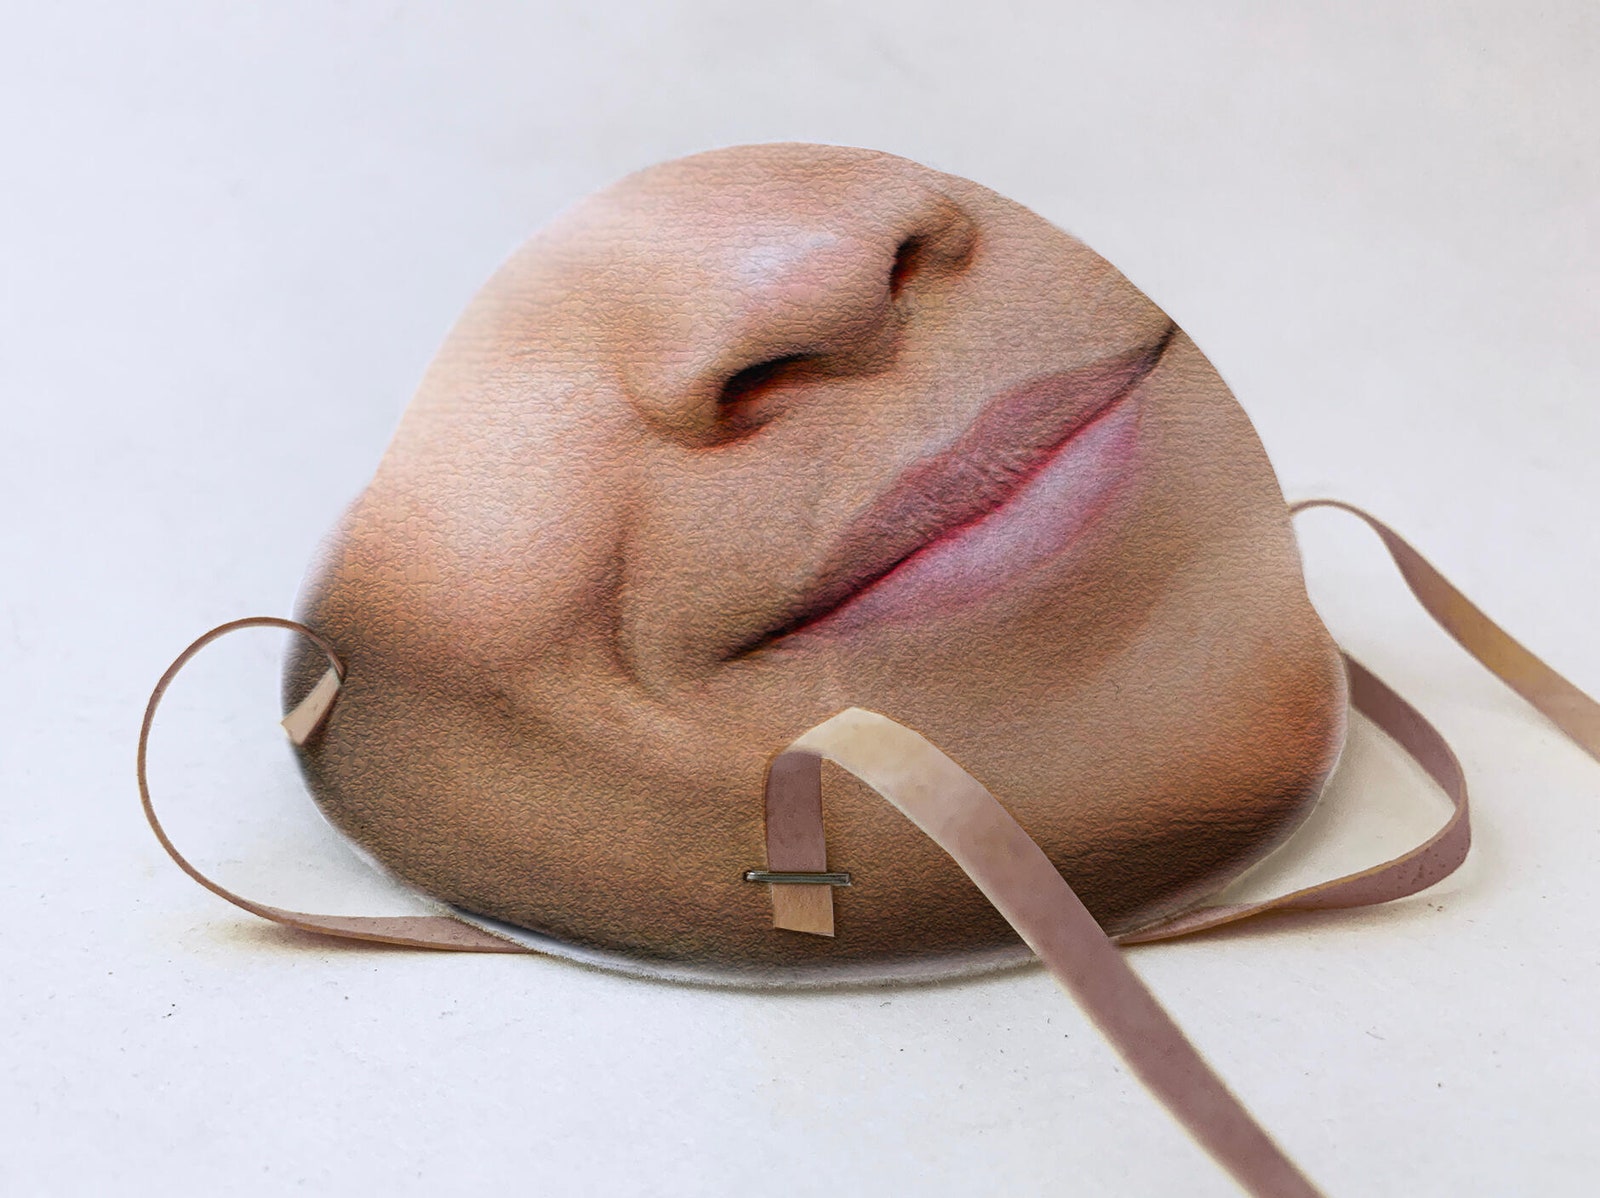 Создали защитную маску с принтом лица для разблокировки смартфона